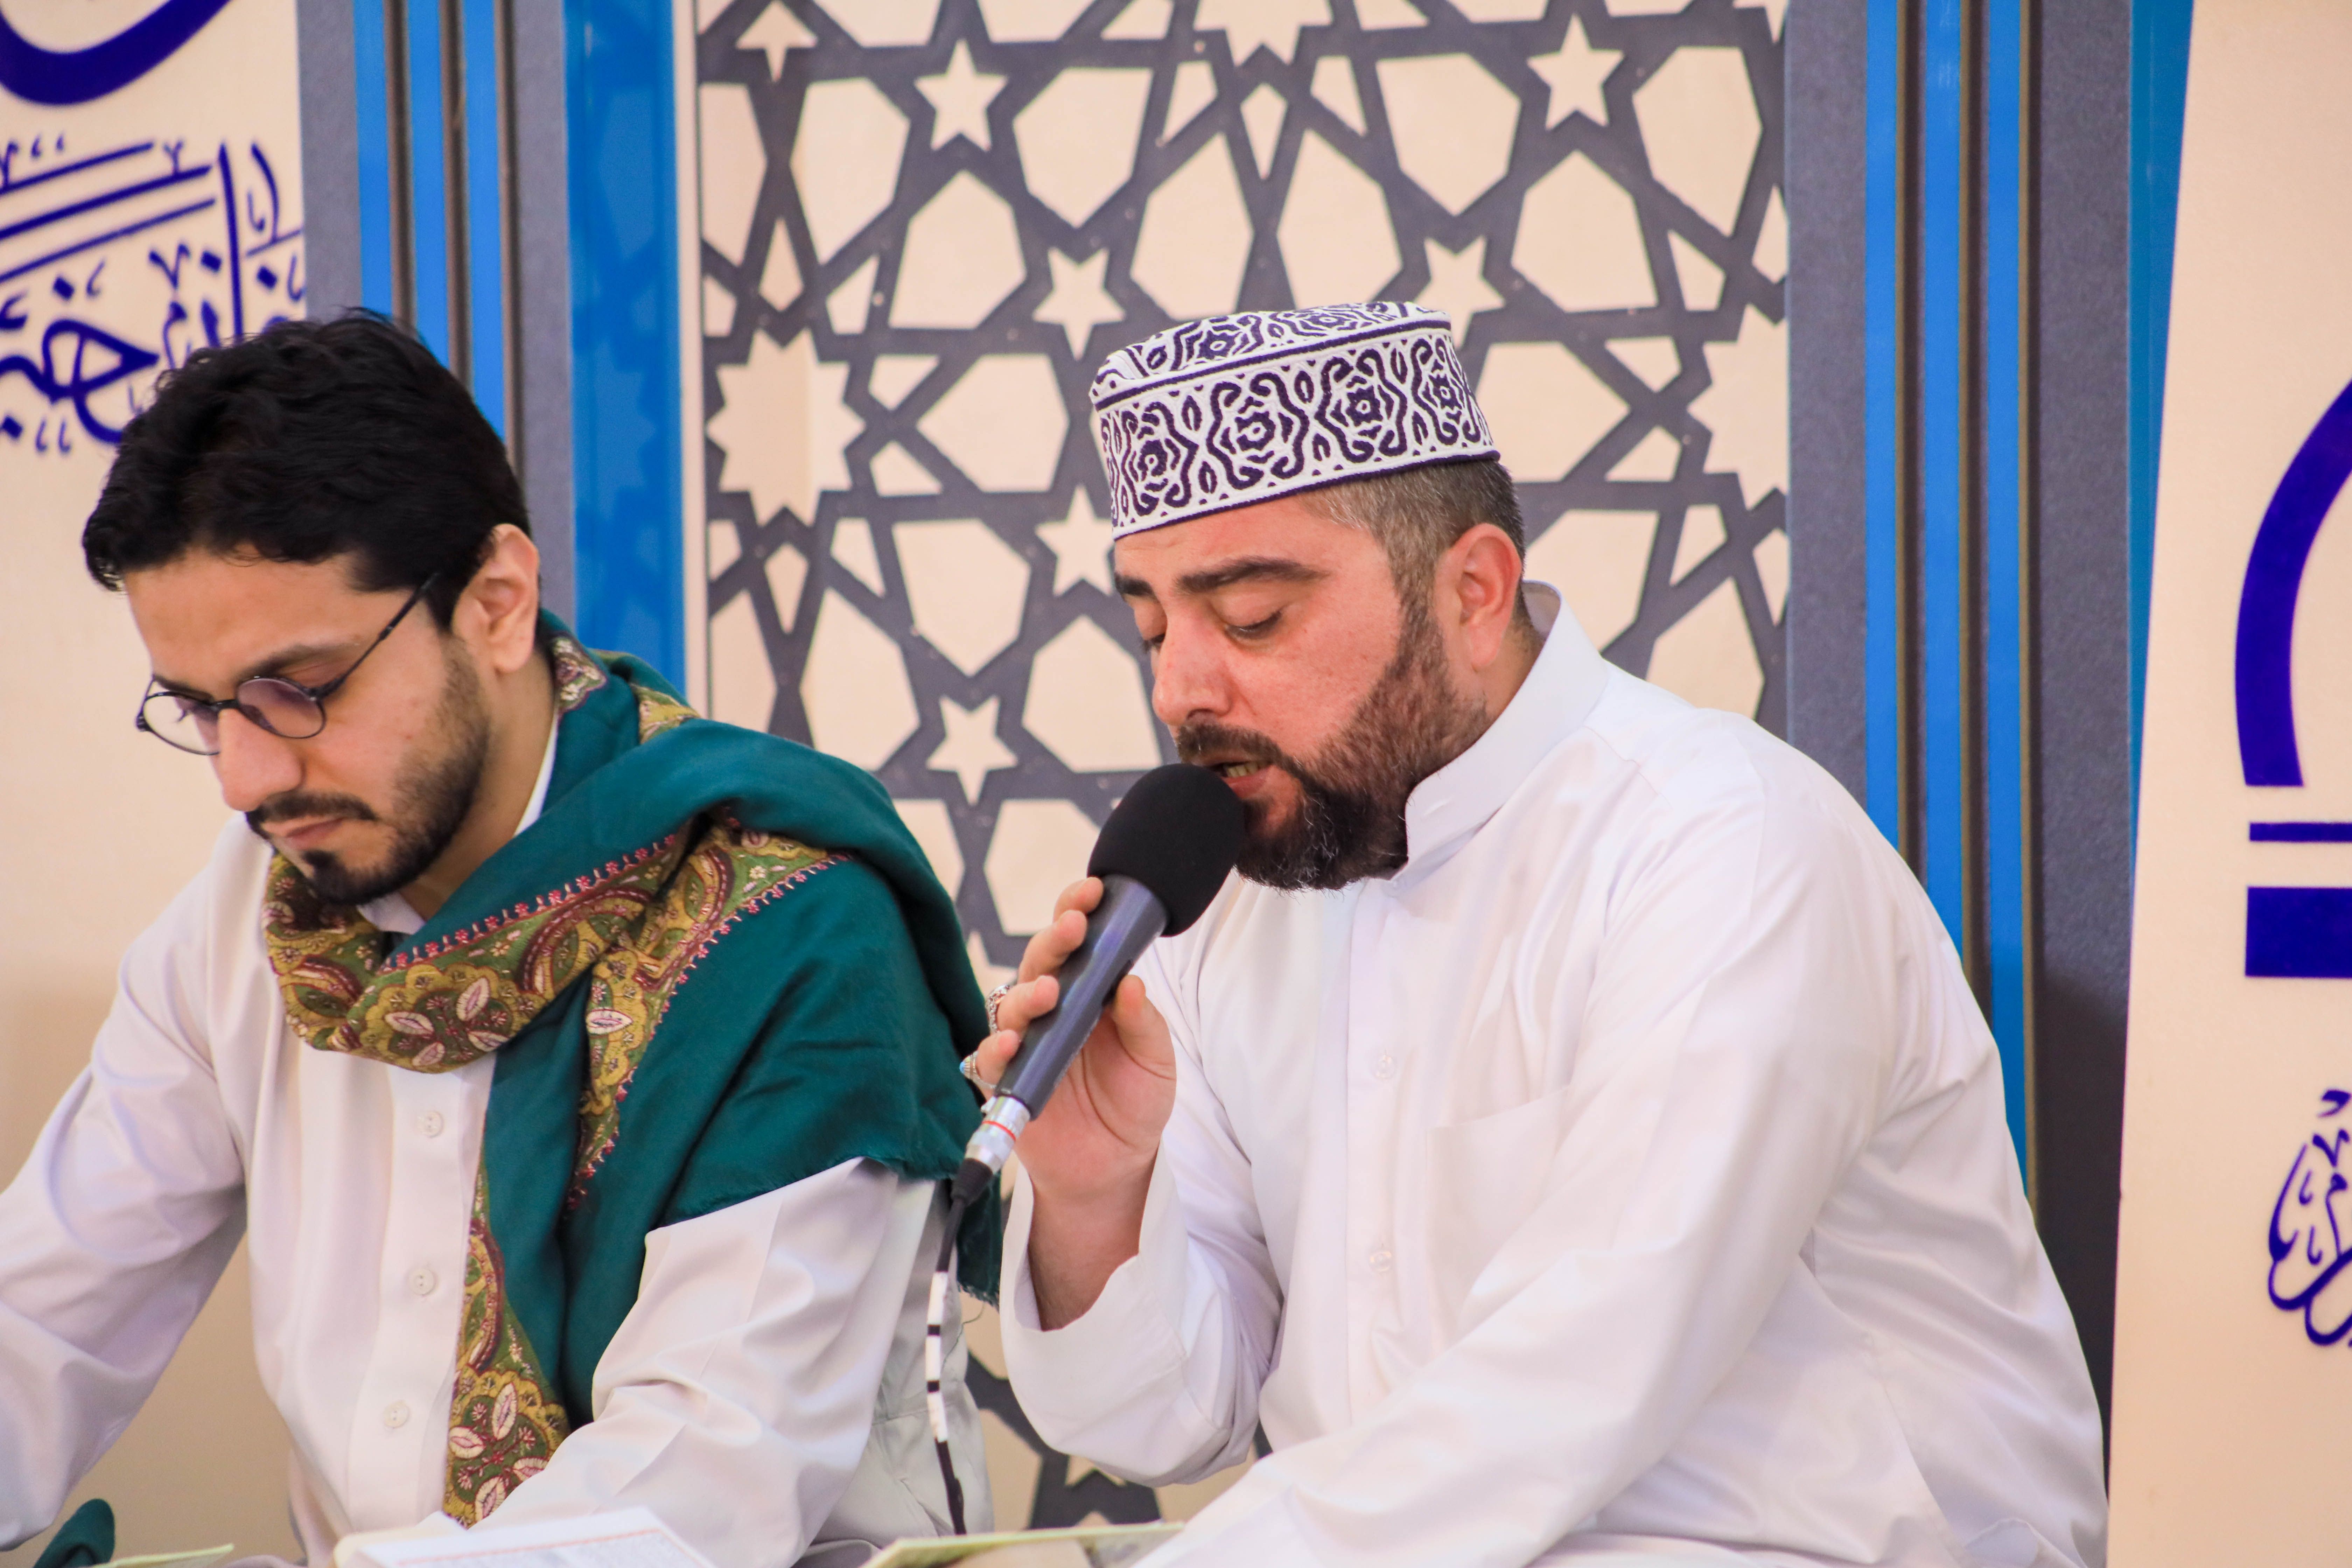 معهد القرآن الكريم يختتم فعاليات الختمة القرآنية الرمضانية ويكرم القرّاء المشاركين فيها